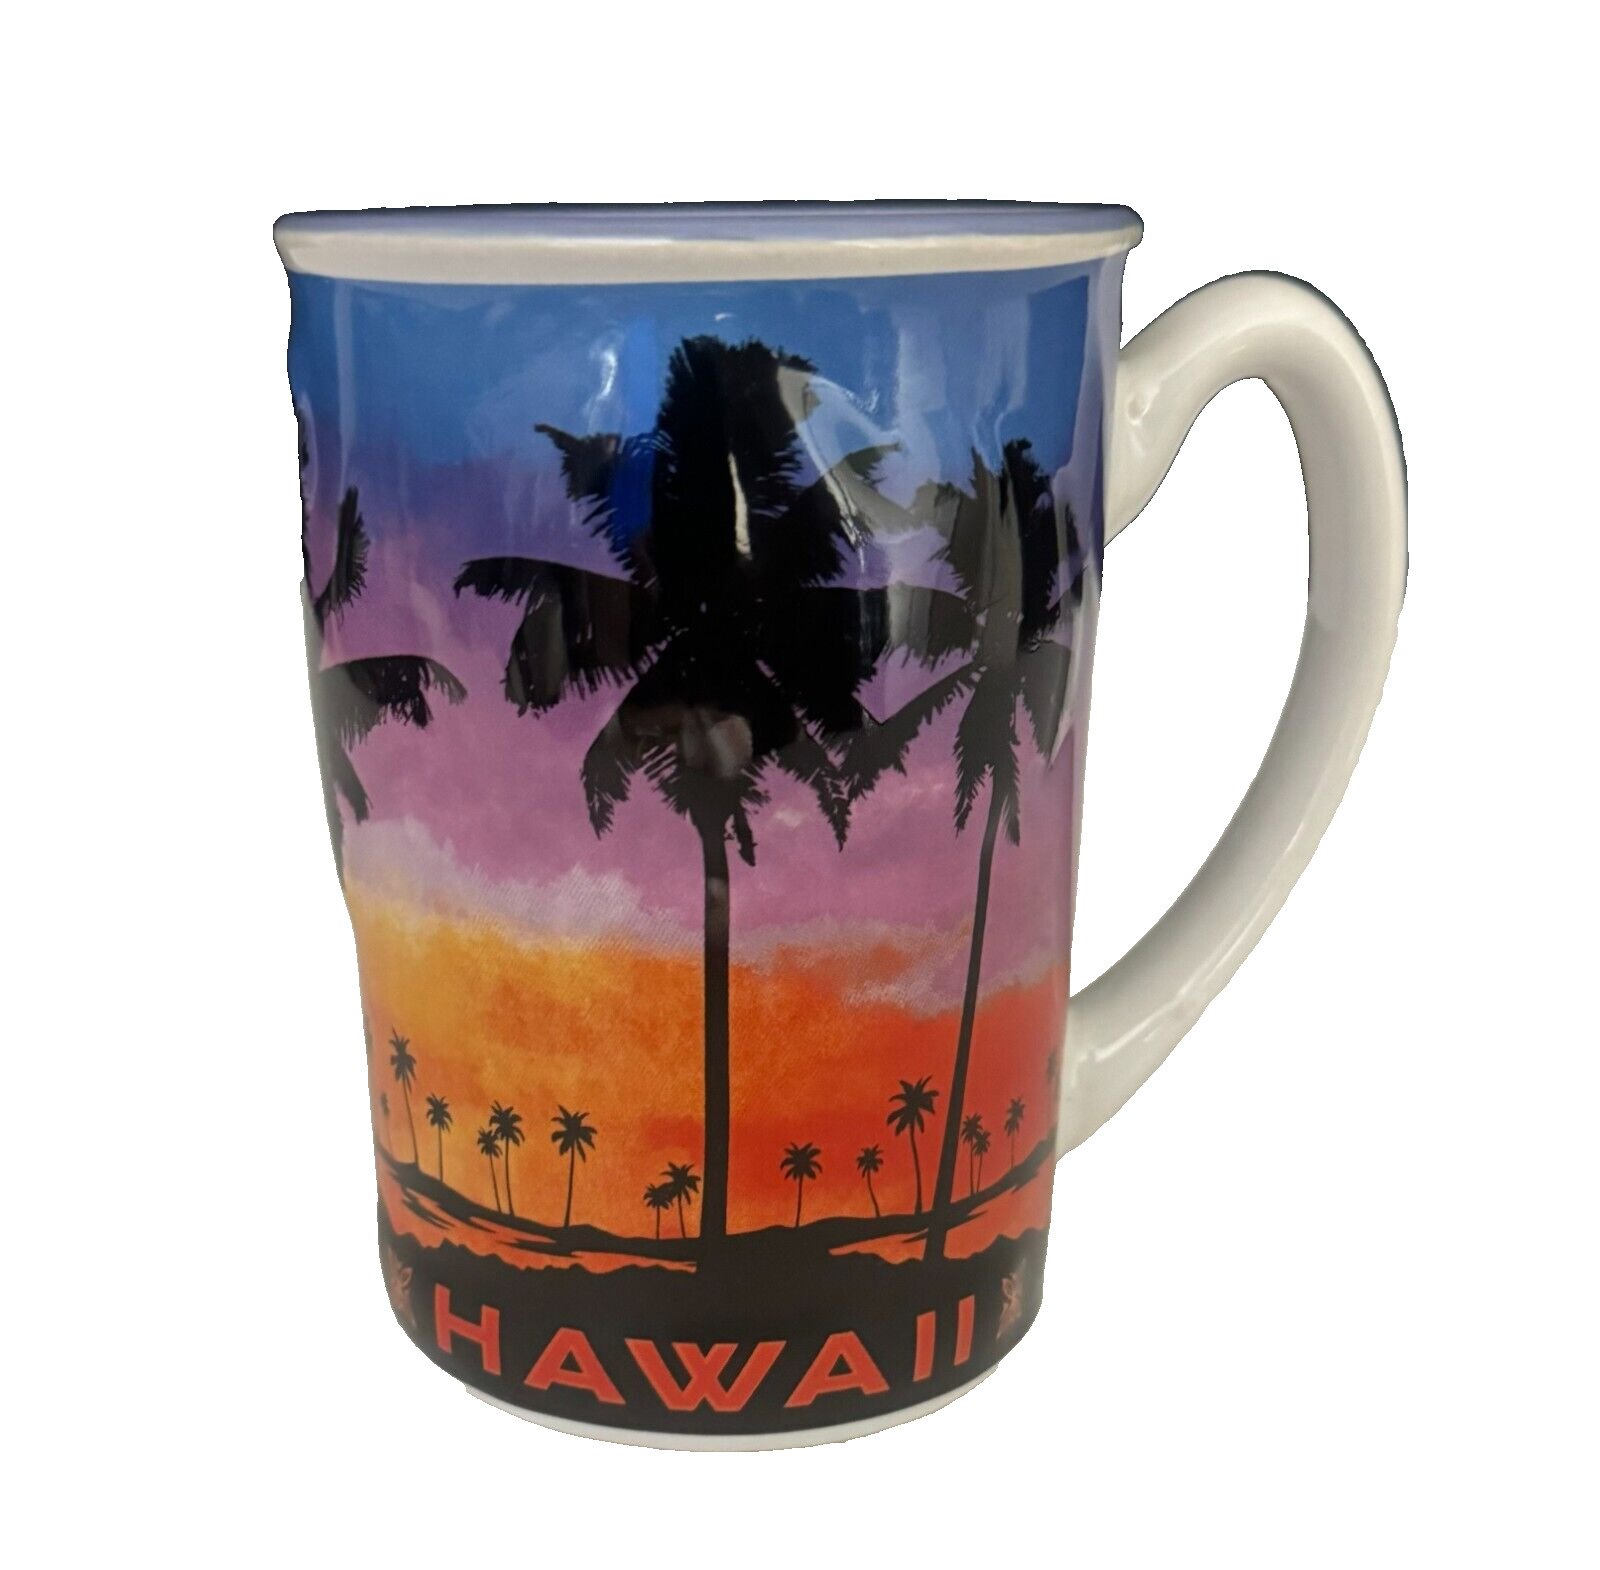 Island Heritage Mug Cup - Hawaii \